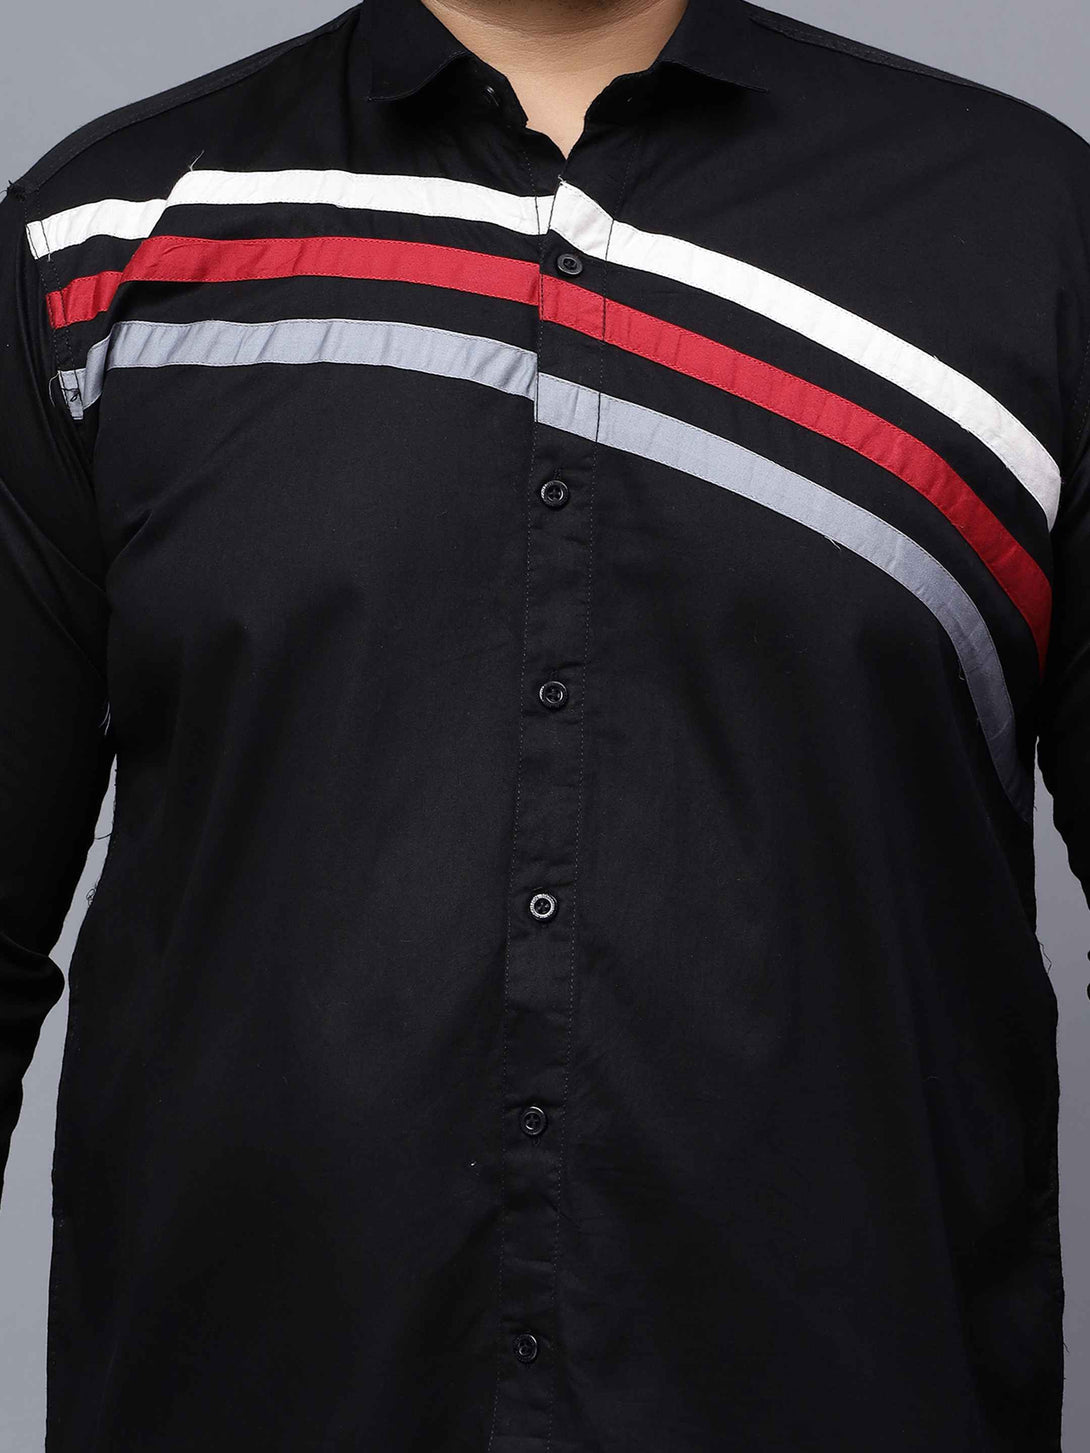 black triple striped cut n sew plus size shirt